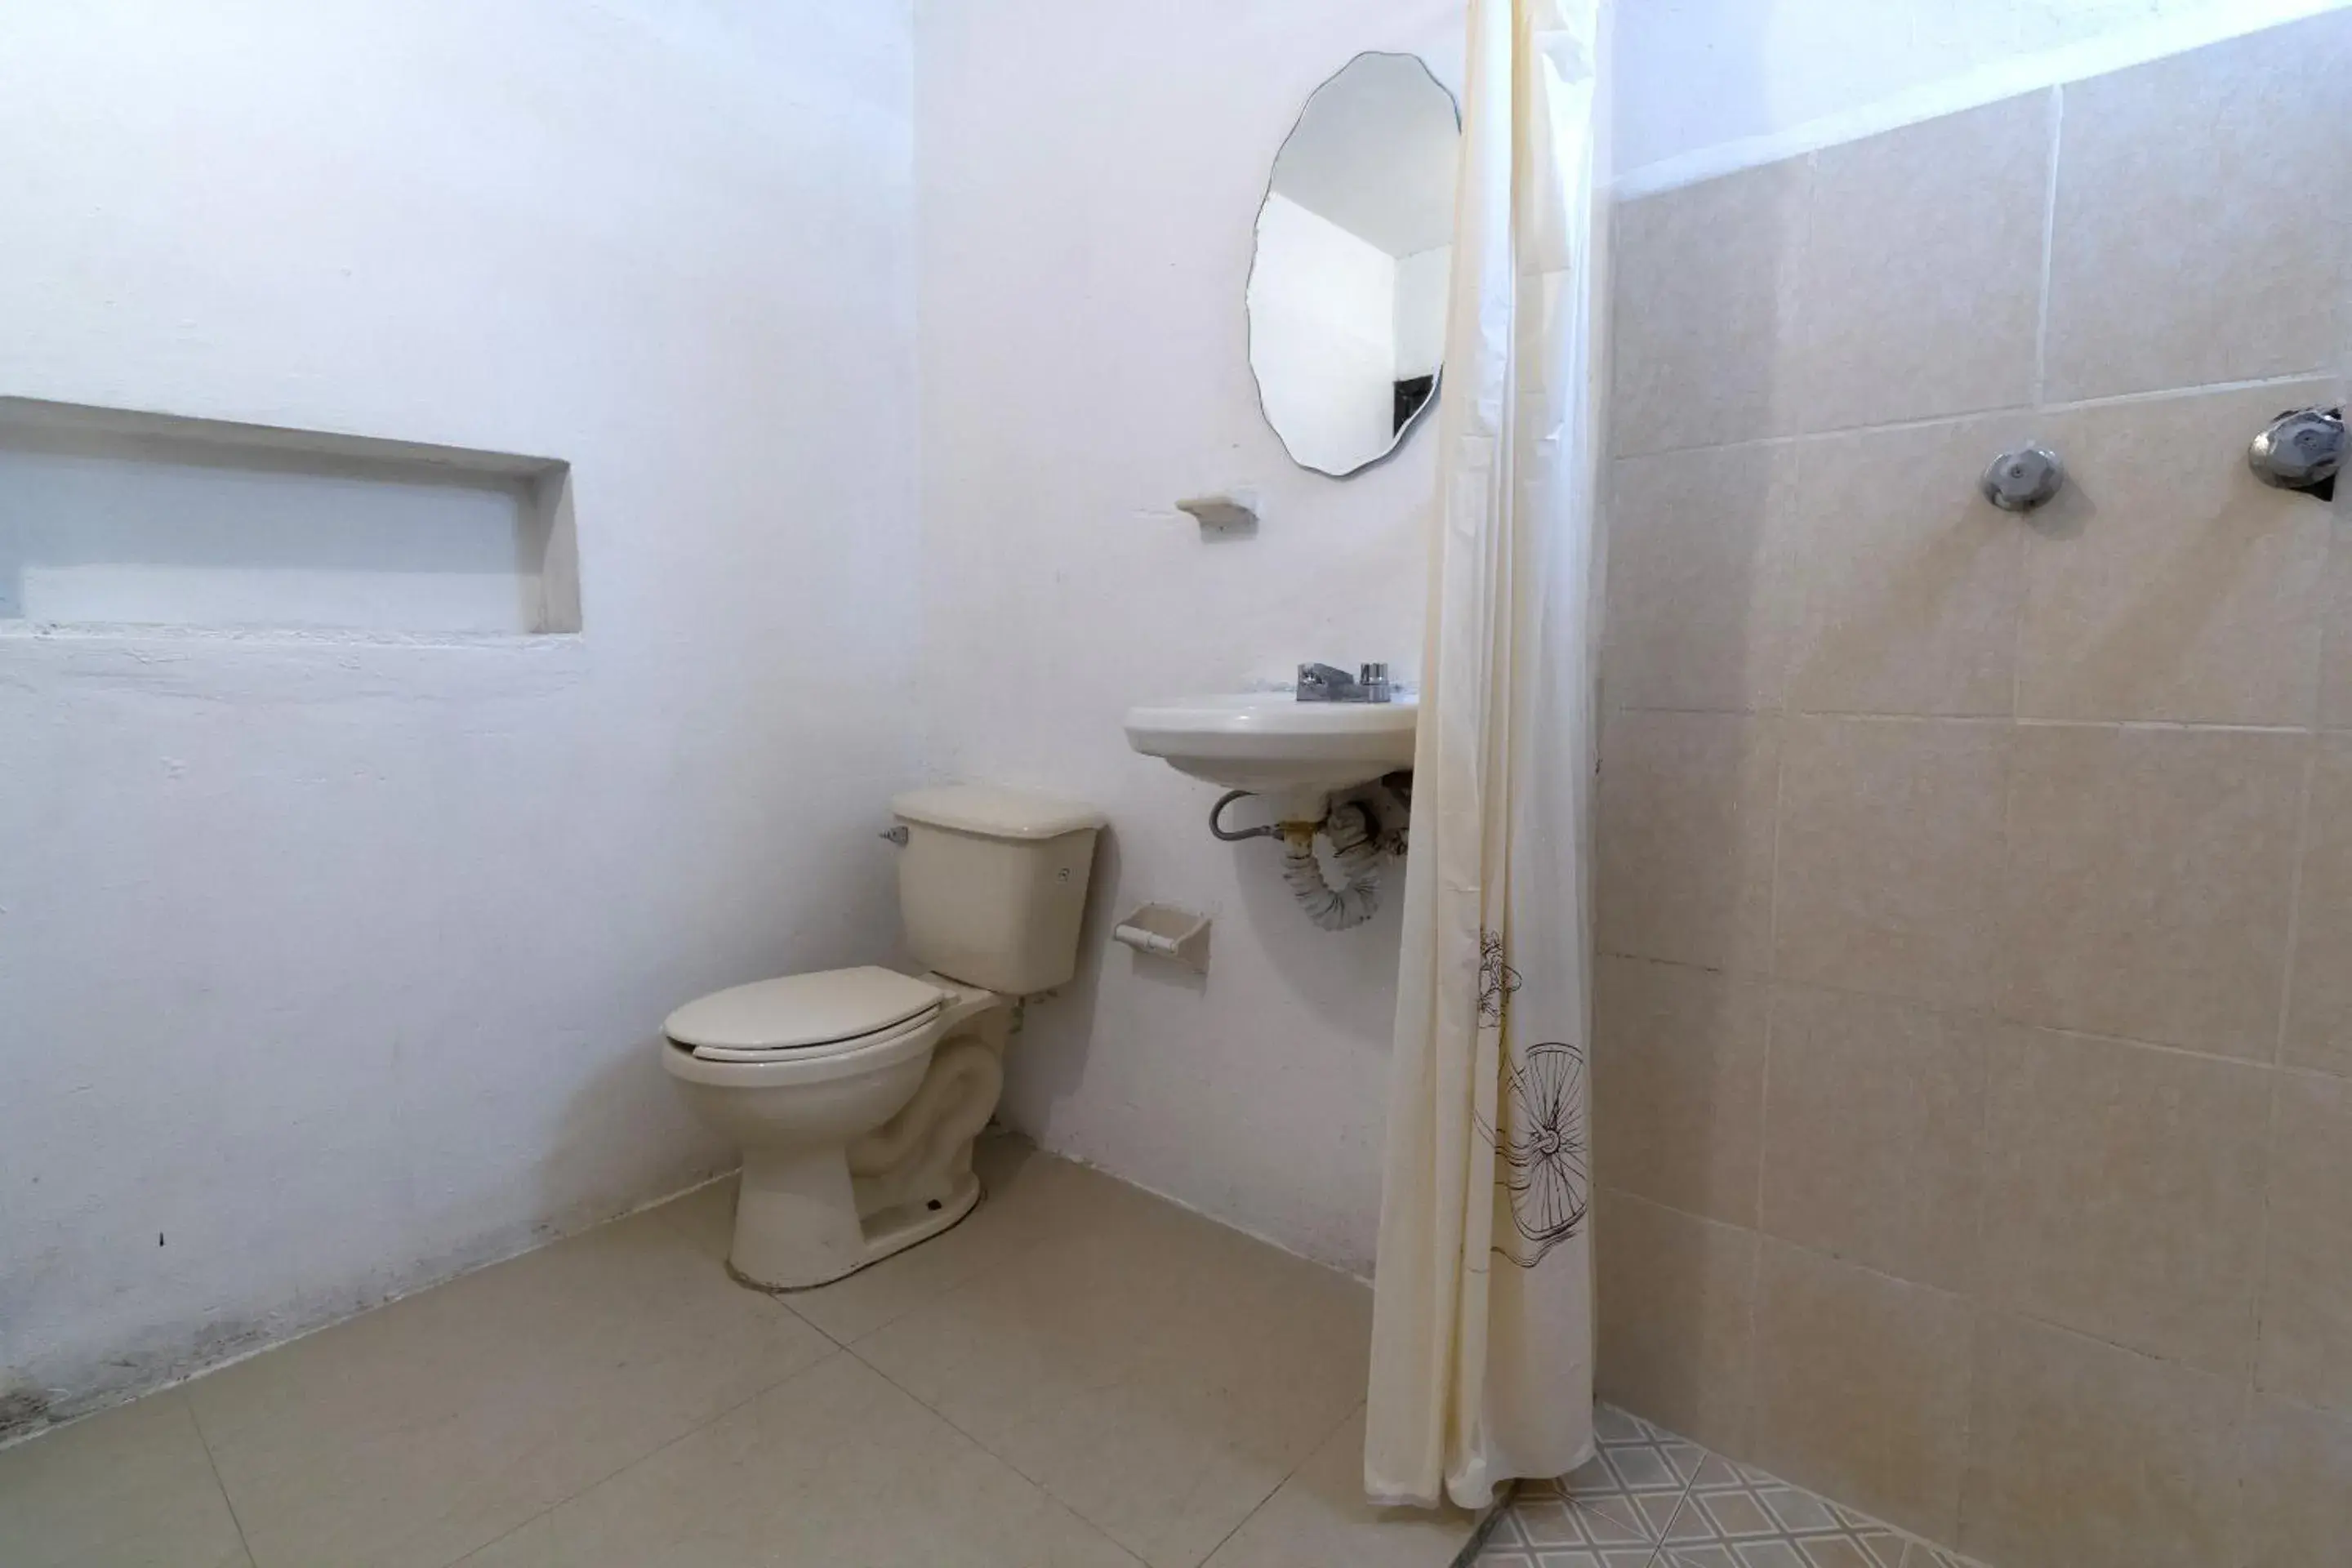 Bathroom in OYO Hotel Punta Guadalupe, San Cristóbal de las Casas